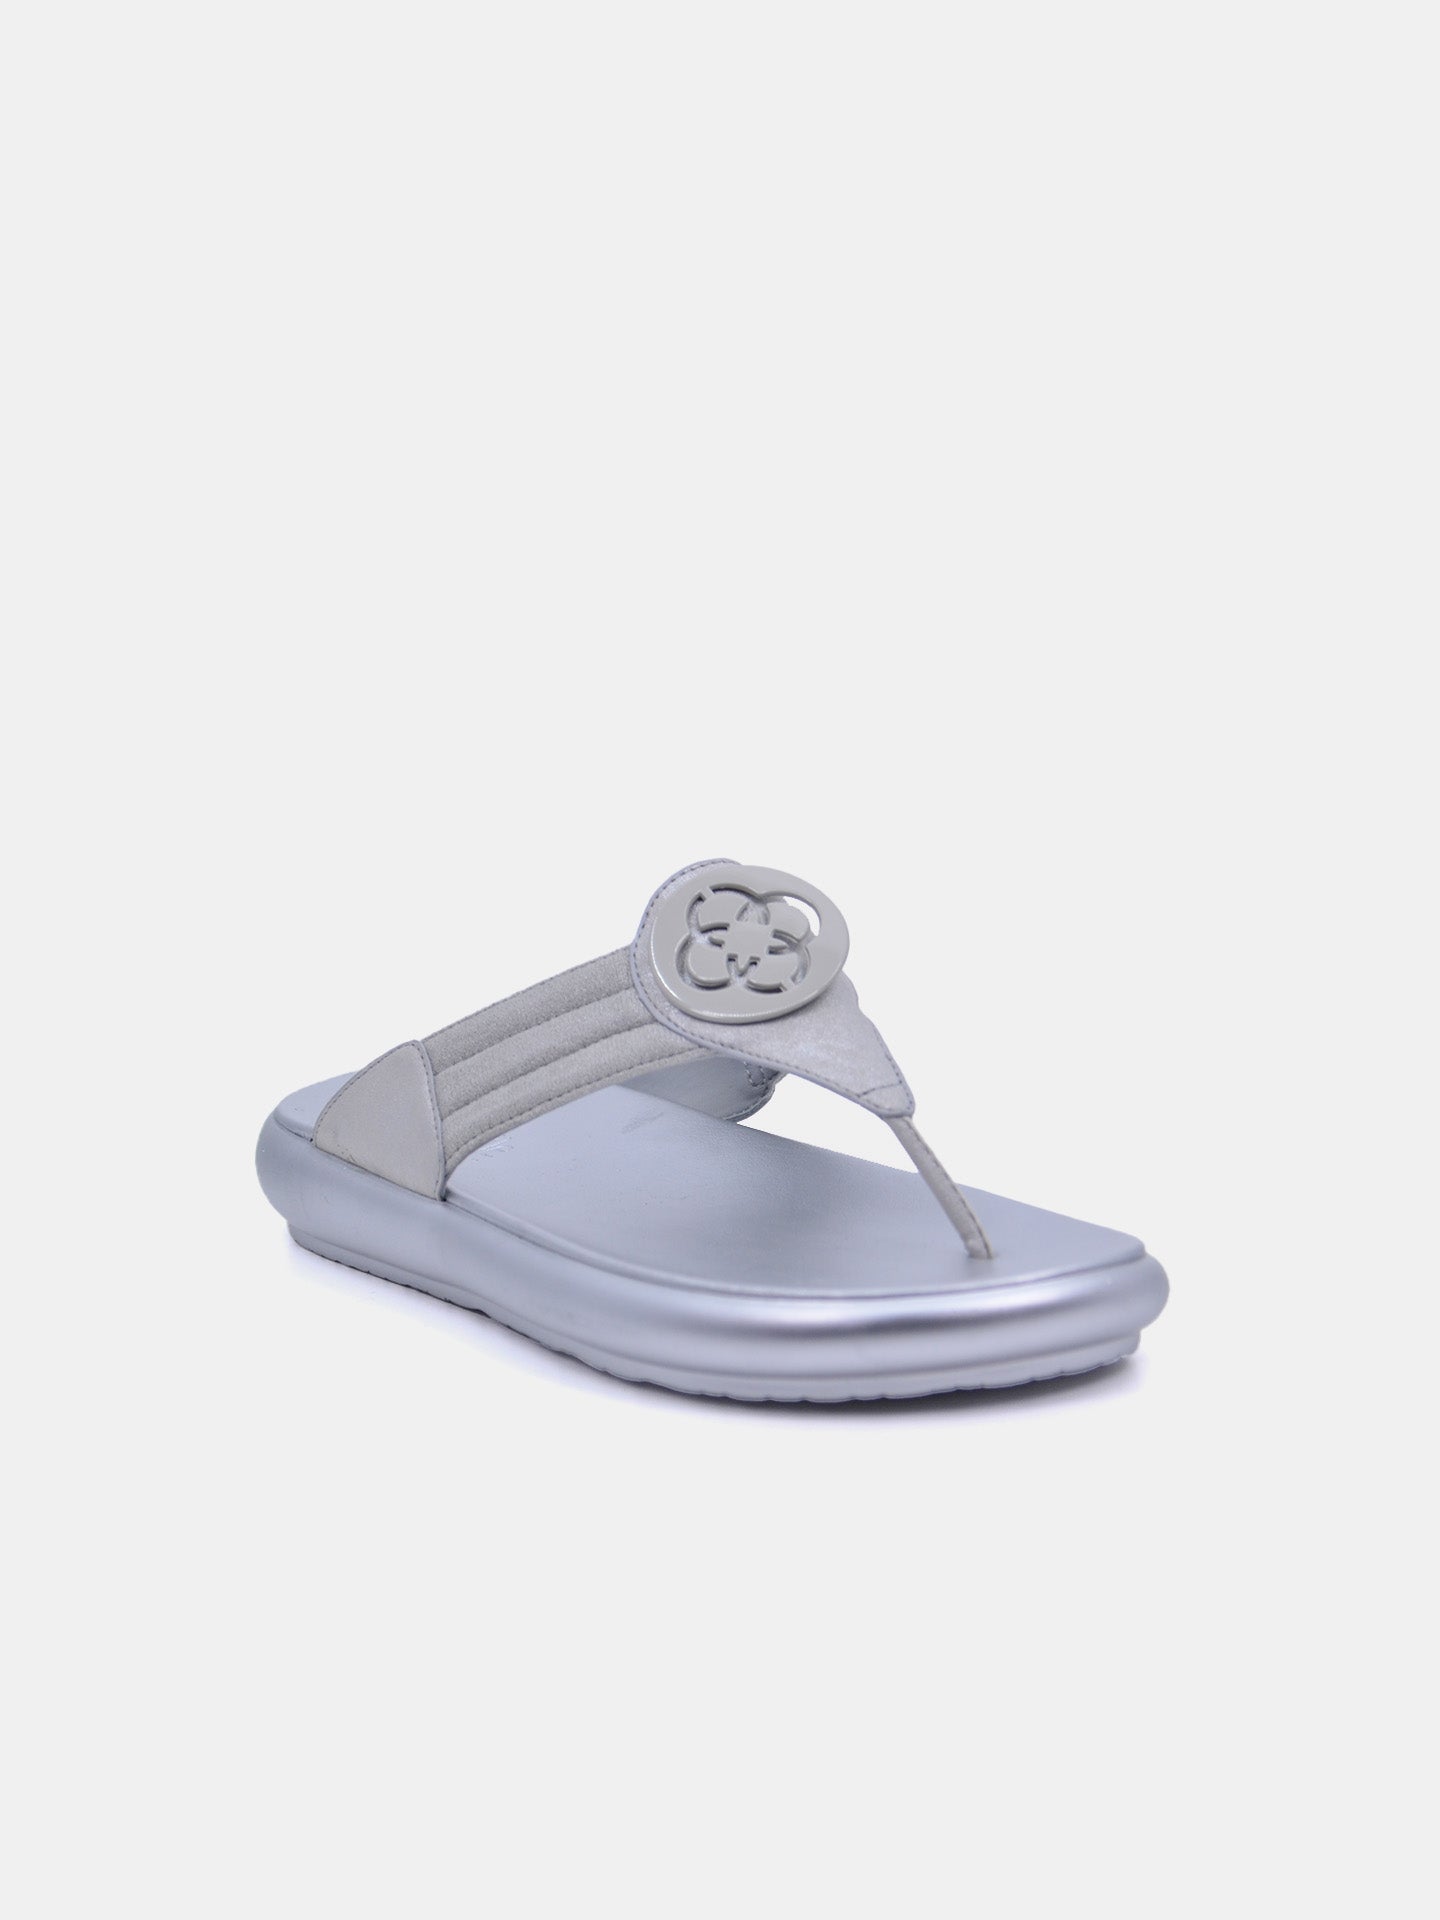 Michelle Morgan 114RC71H Women's Flat Sandals #color_Silver